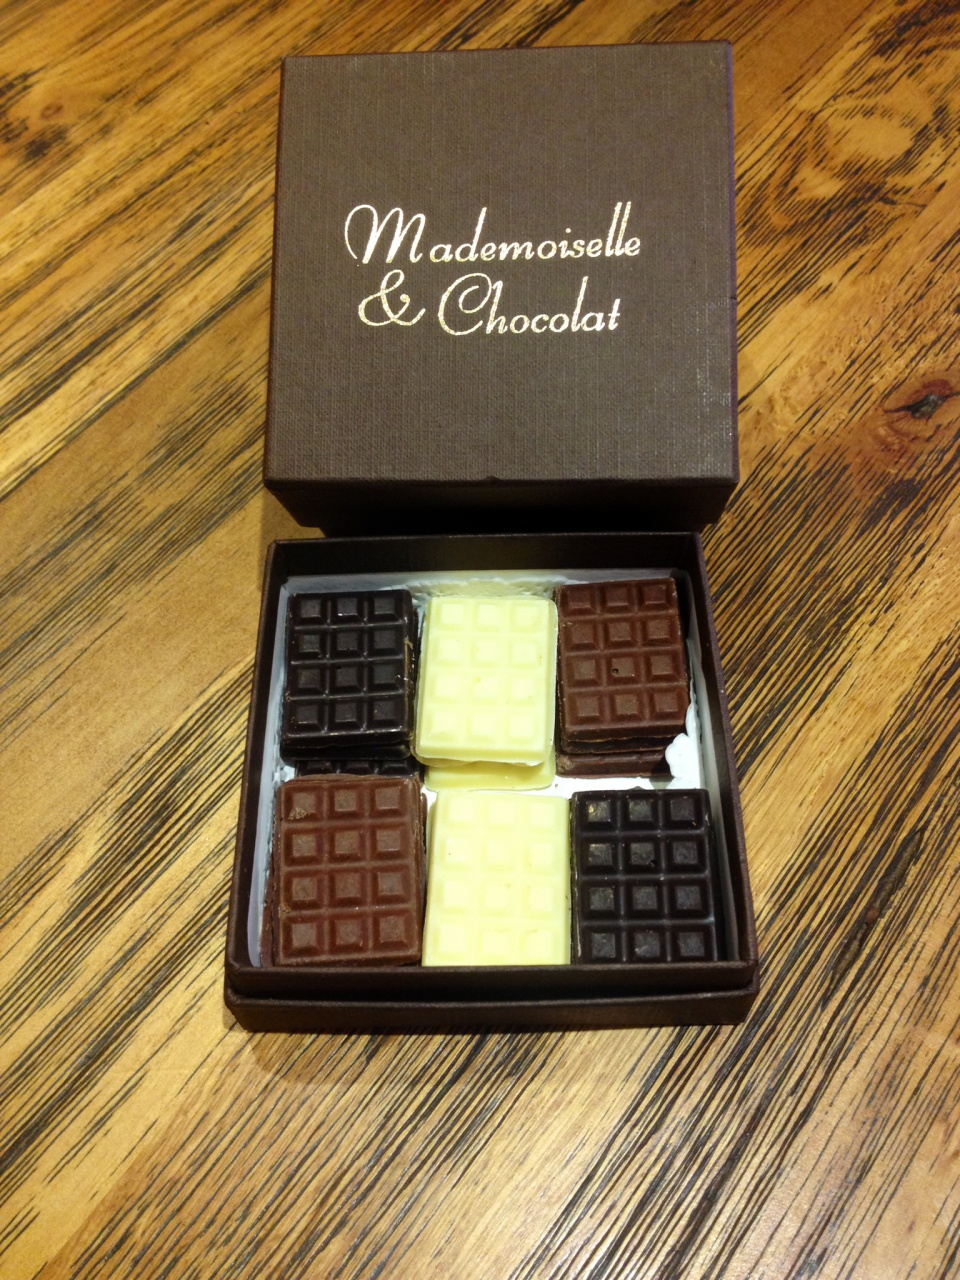 Tablettes@Mademoiselle & Chocolat